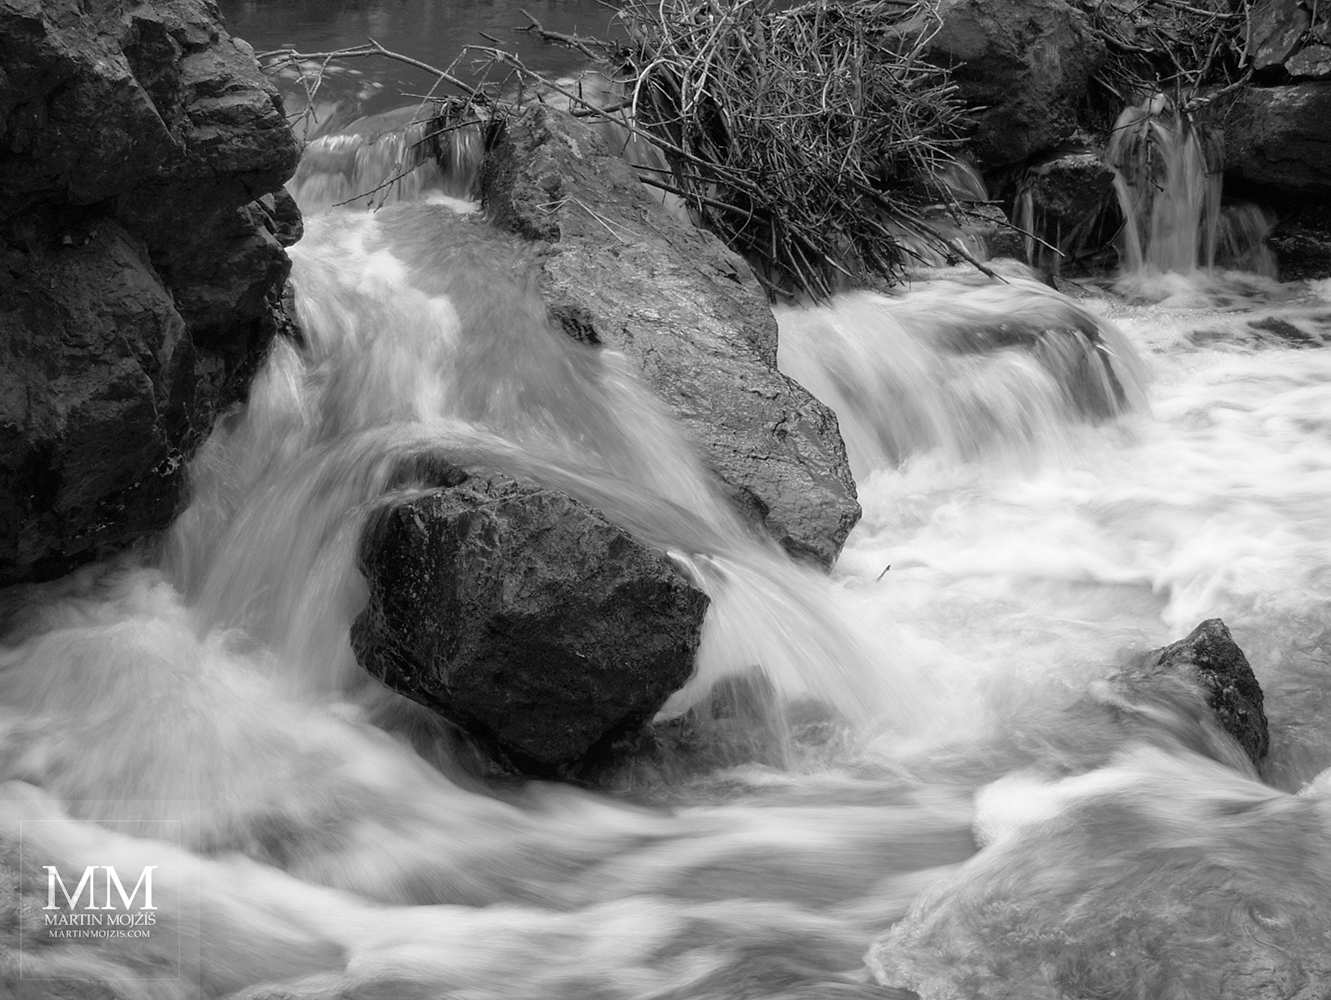 Vodopád v potoce, velké kameny. Fotografie s názvem VODOPÁD.